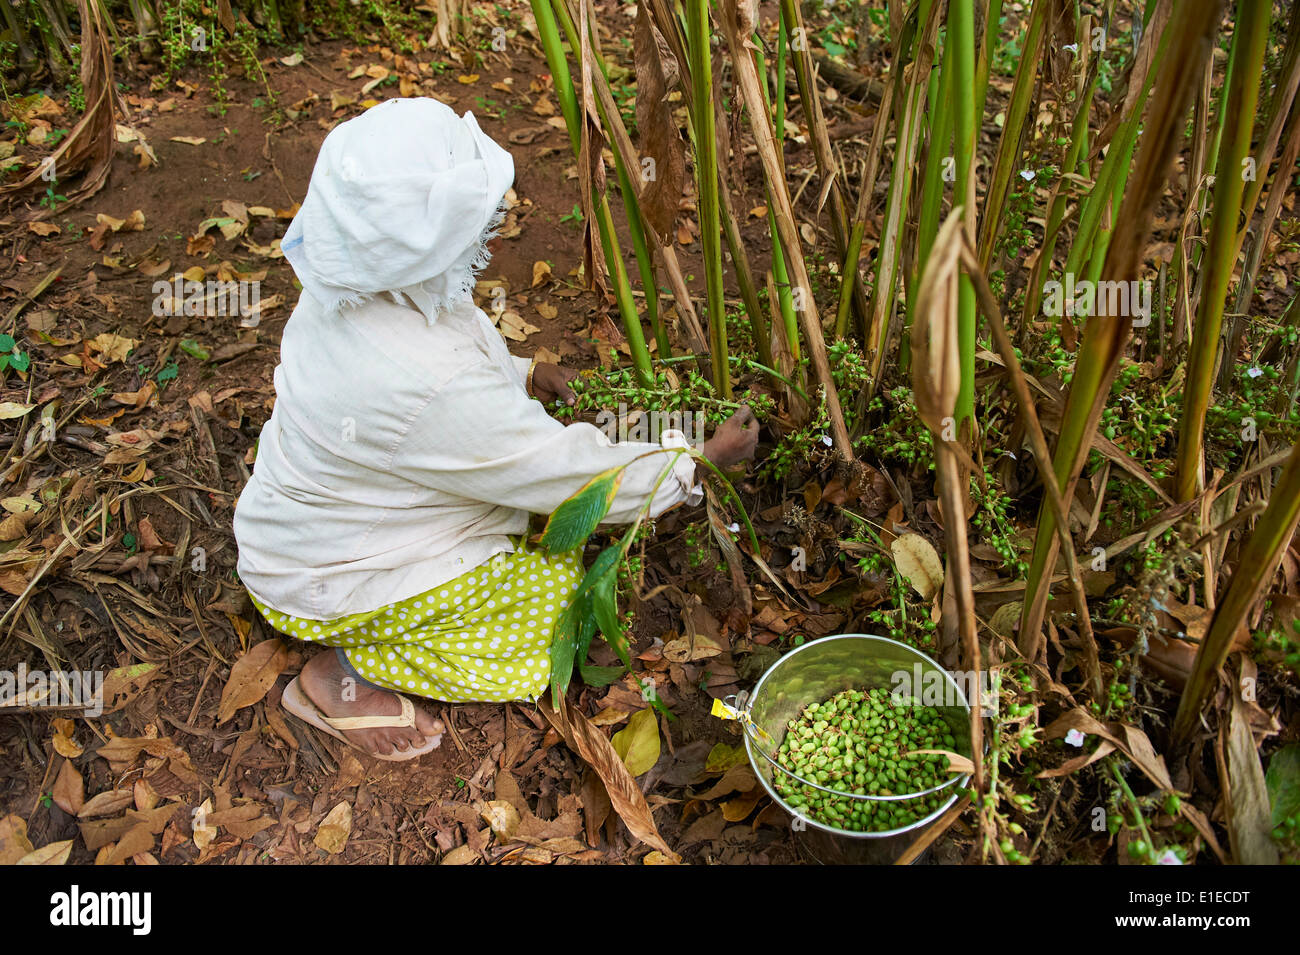 L'Inde, Etat du Kerala, Munnar, recueillir de cardamome Banque D'Images